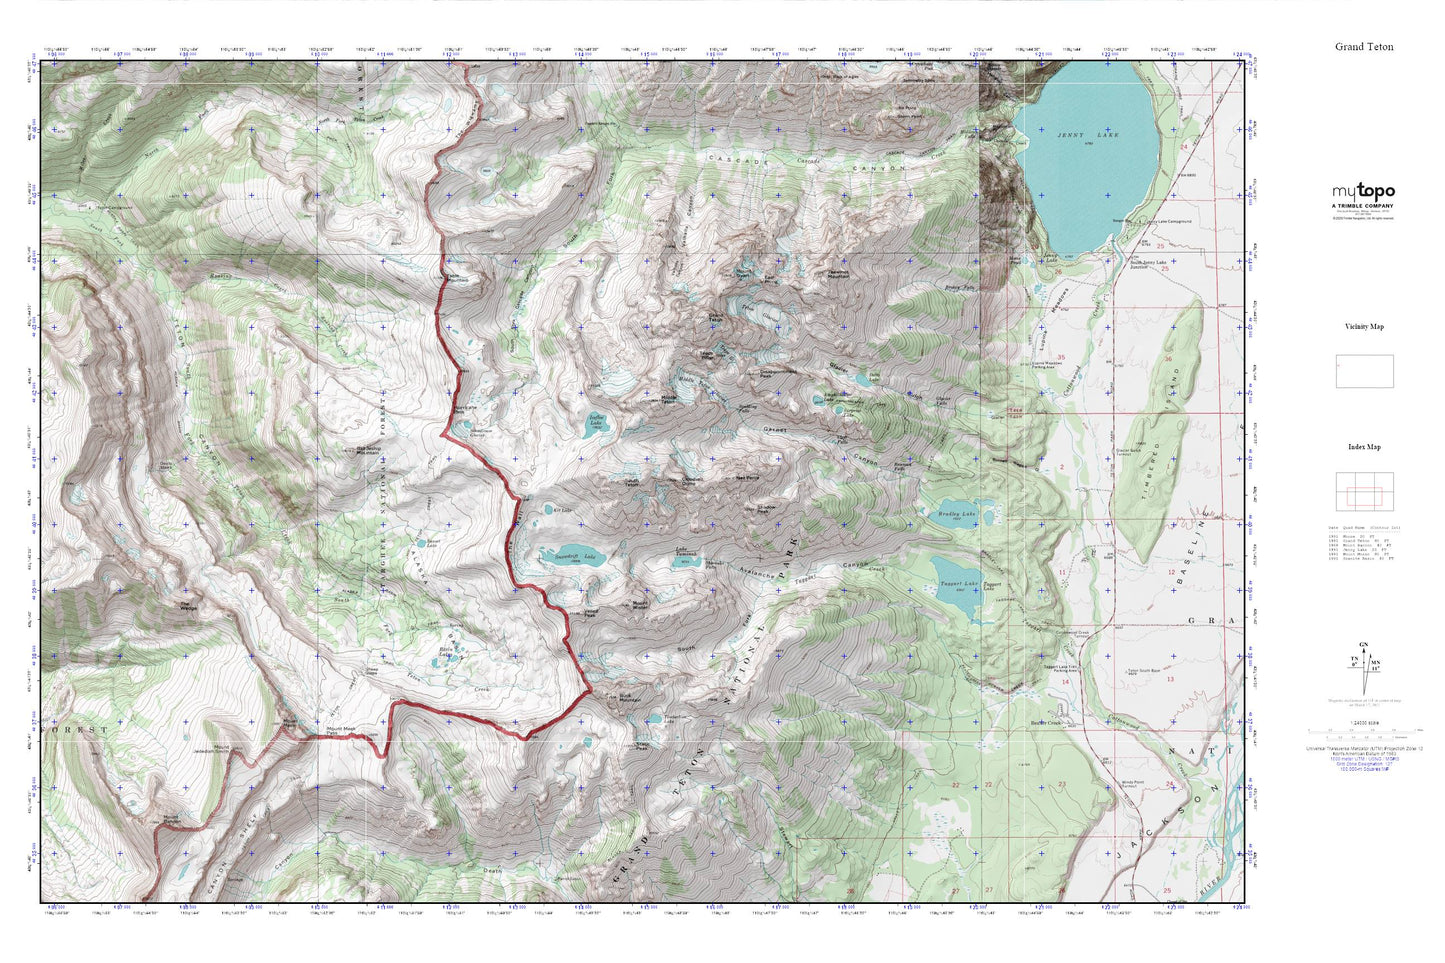 Grand Teton MyTopo Explorer Series Map Image